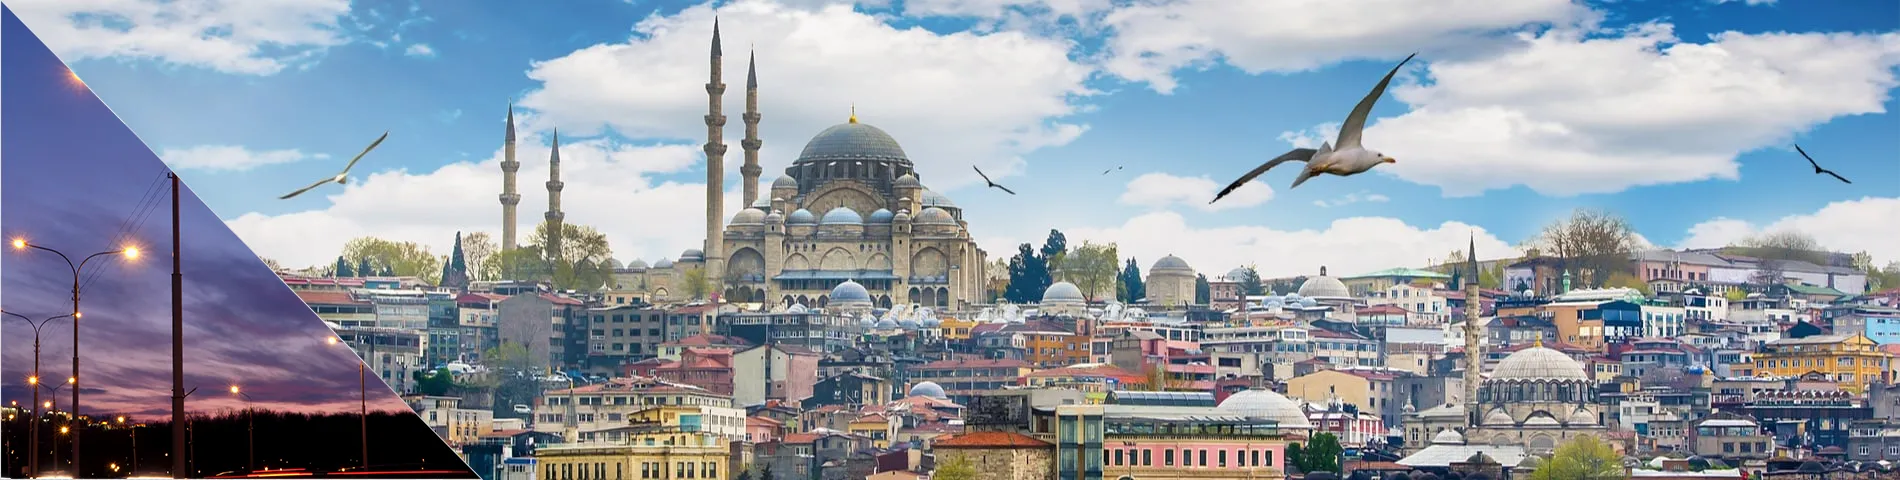 أسطنبول - الدورة المسائية